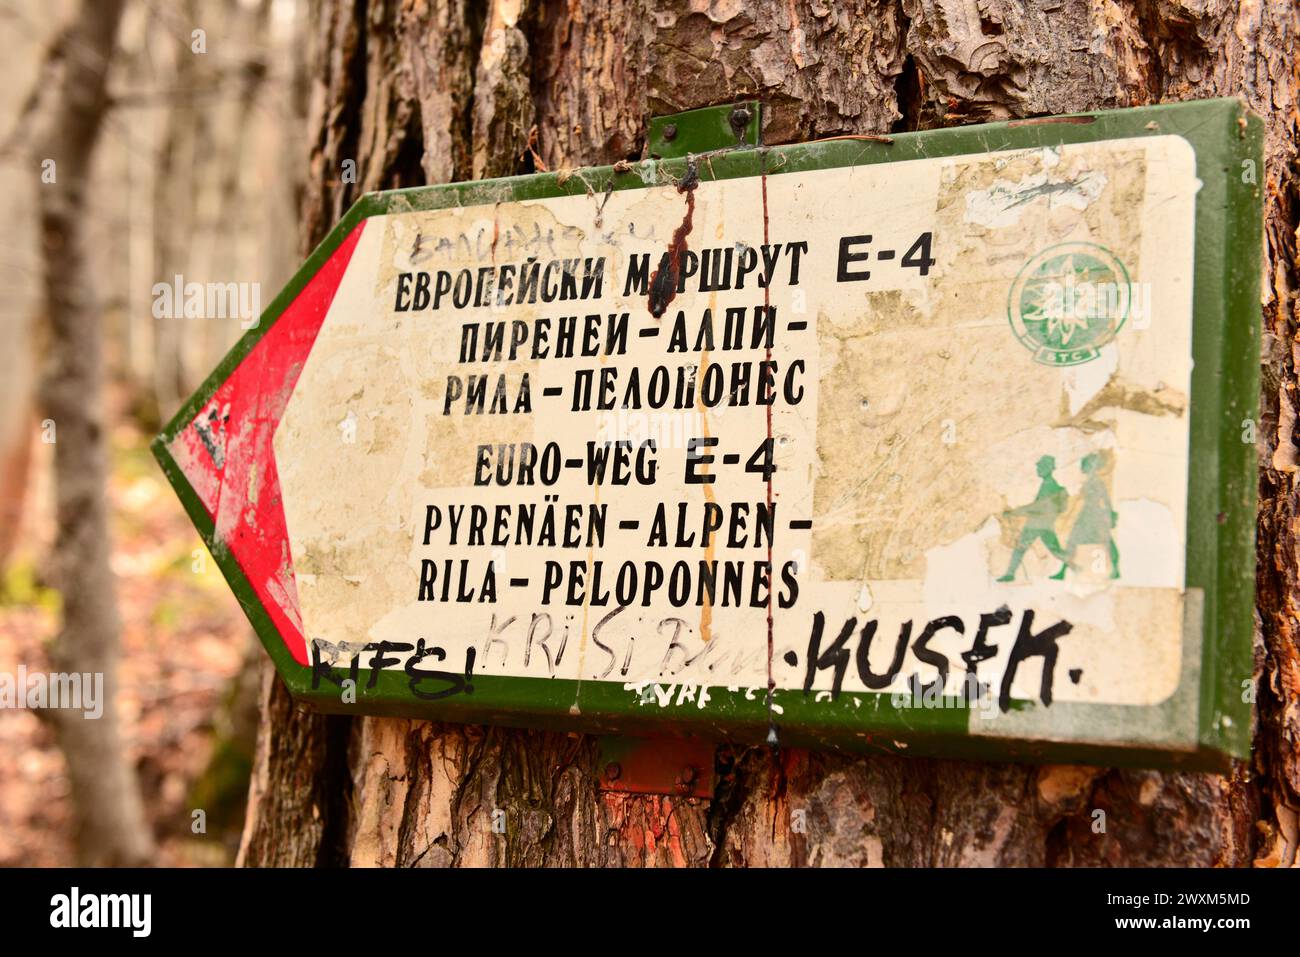 E4 il percorso europeo a lunga distanza ha segnato il passaggio dei Pirenei al Peloponneso, percorso escursionistico internazionale sul monte Vitosha, vicino a Sofia, Bulgaria, UE Foto Stock